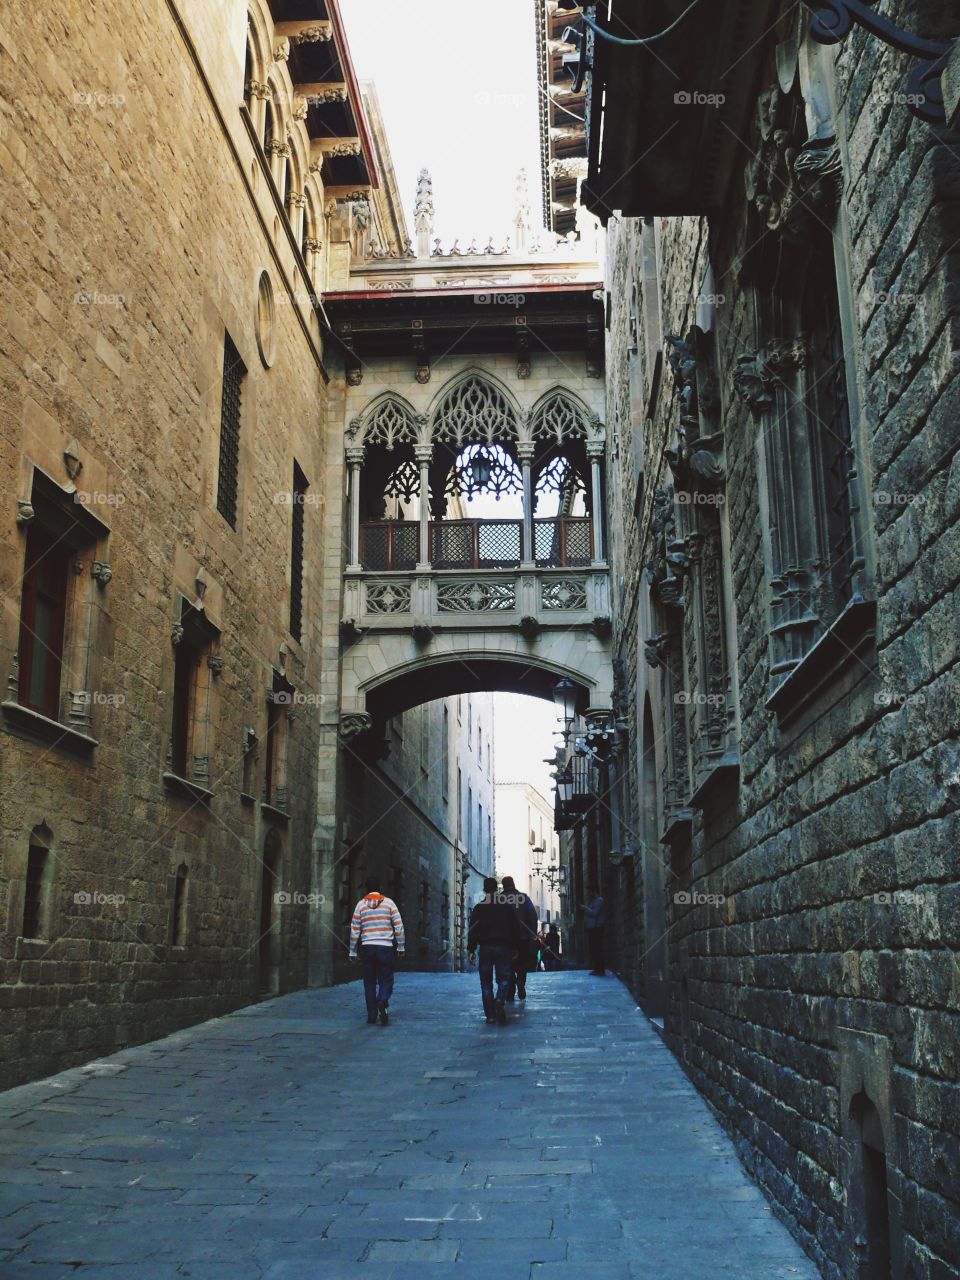 Exploring Barcelona's alleys